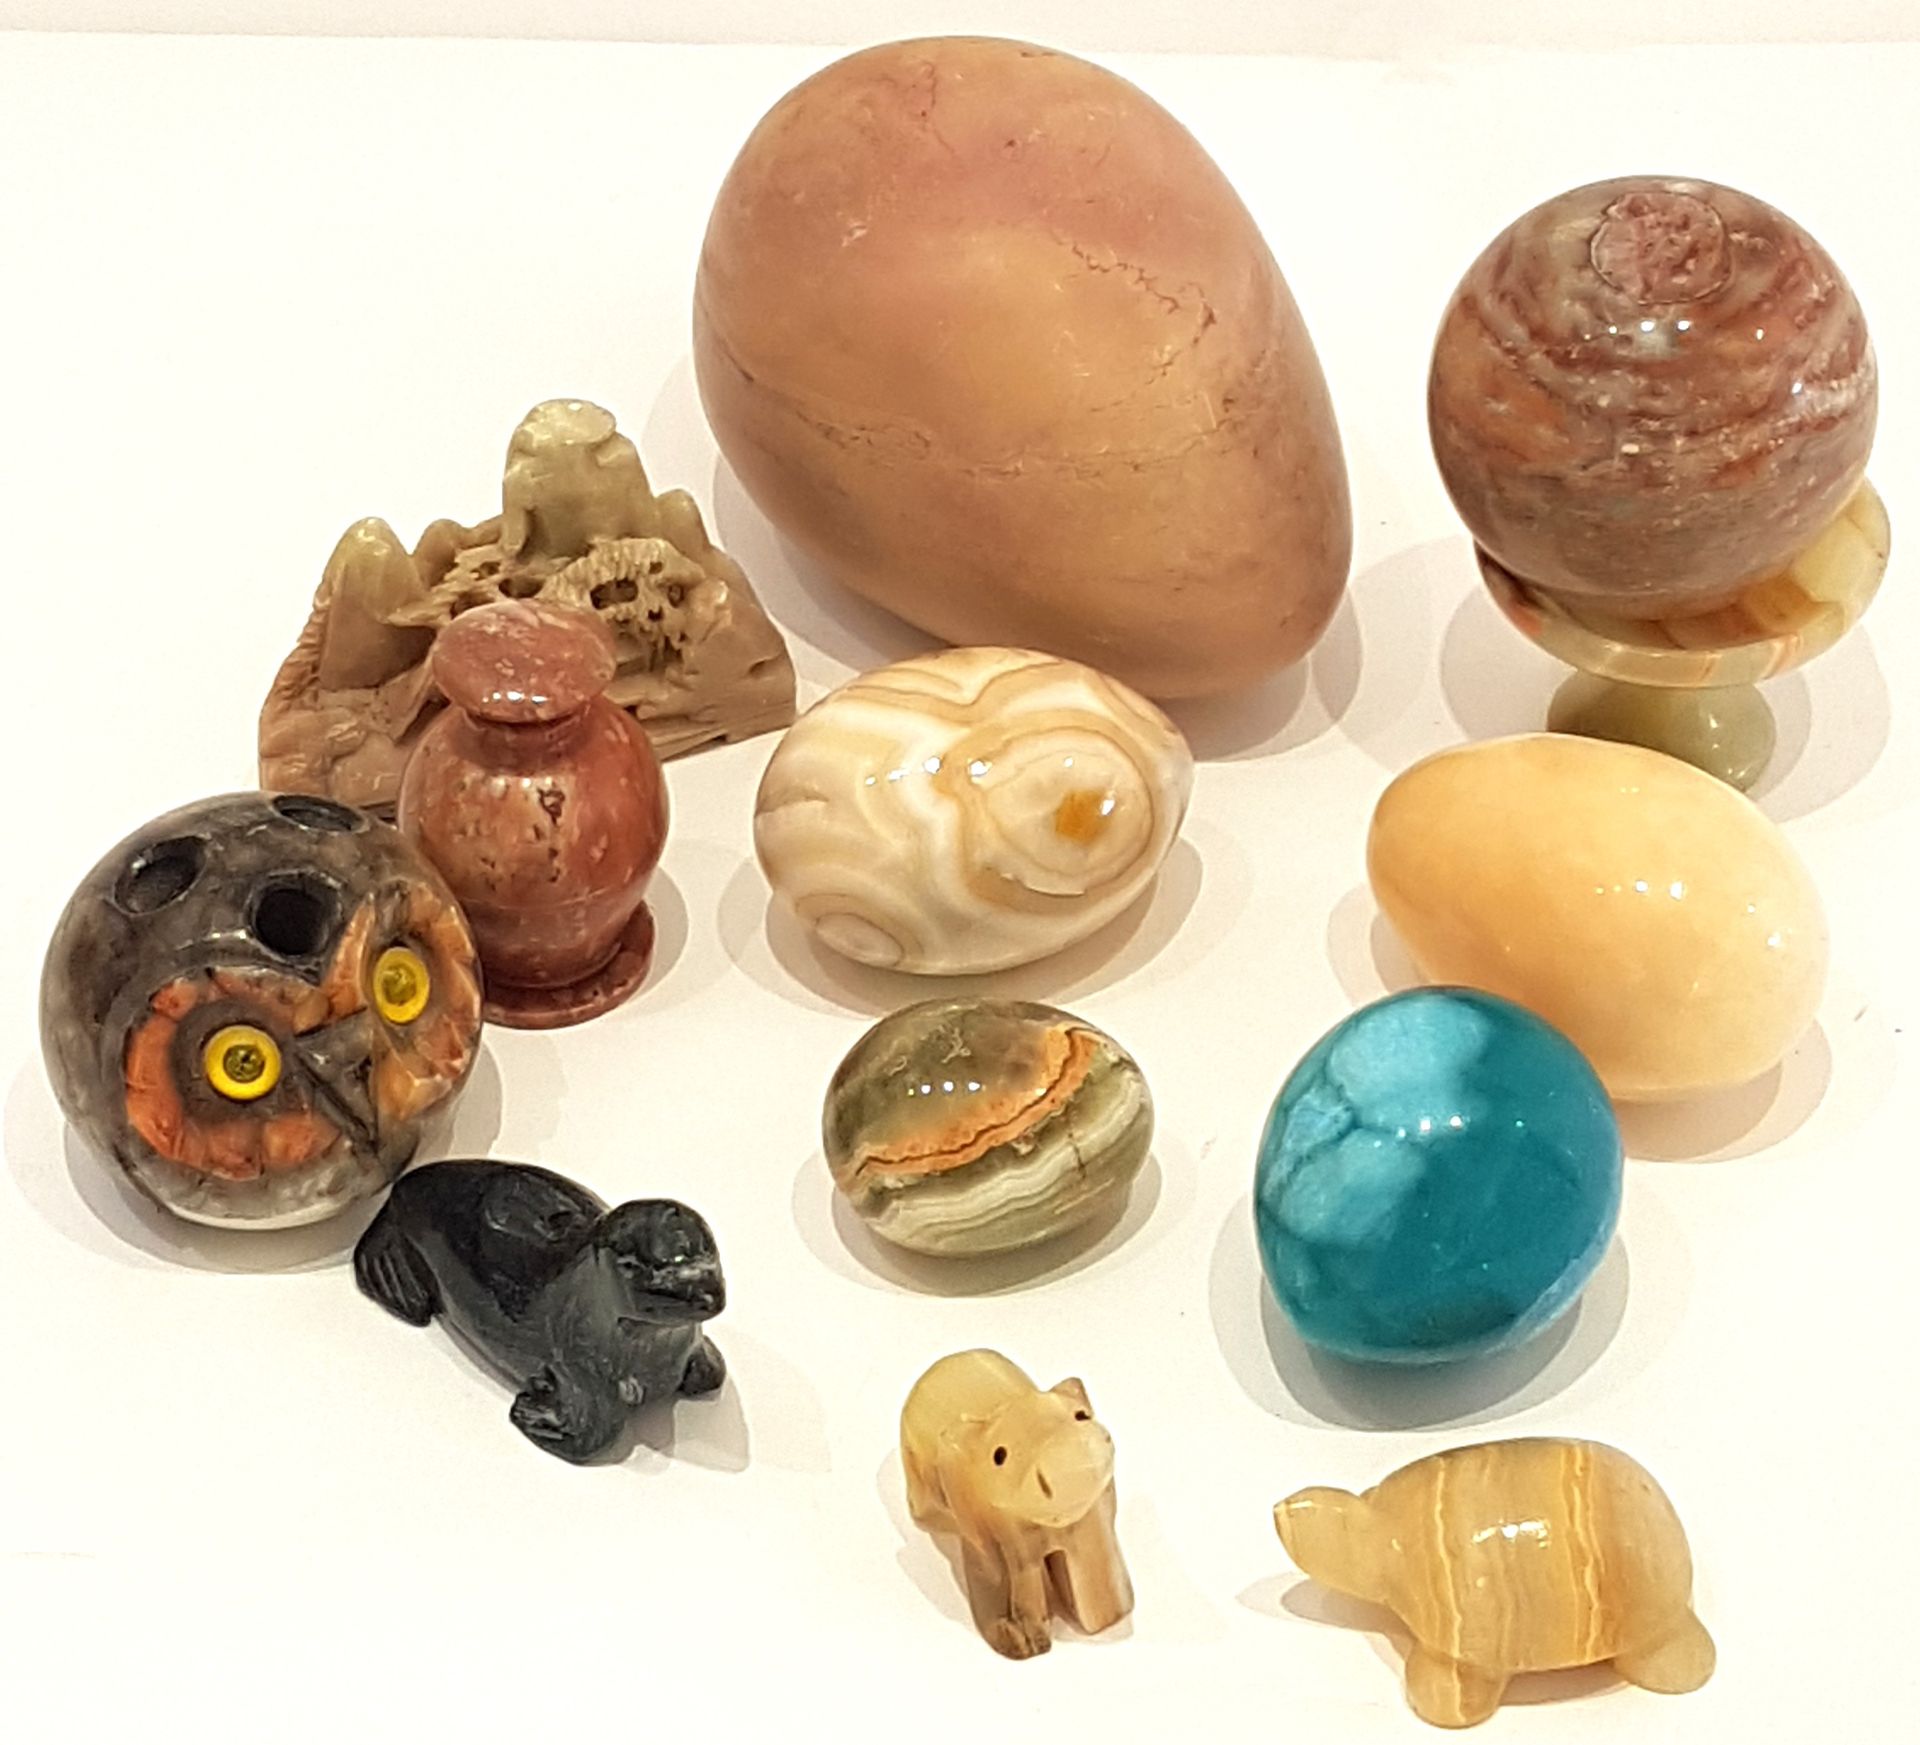 Null 硬石套装包括六个蛋、一个盘子、一个有盖花瓶、一只羽毛猫头鹰、一只乌龟、一头大象、一只海狮和一幅裸石风景画。